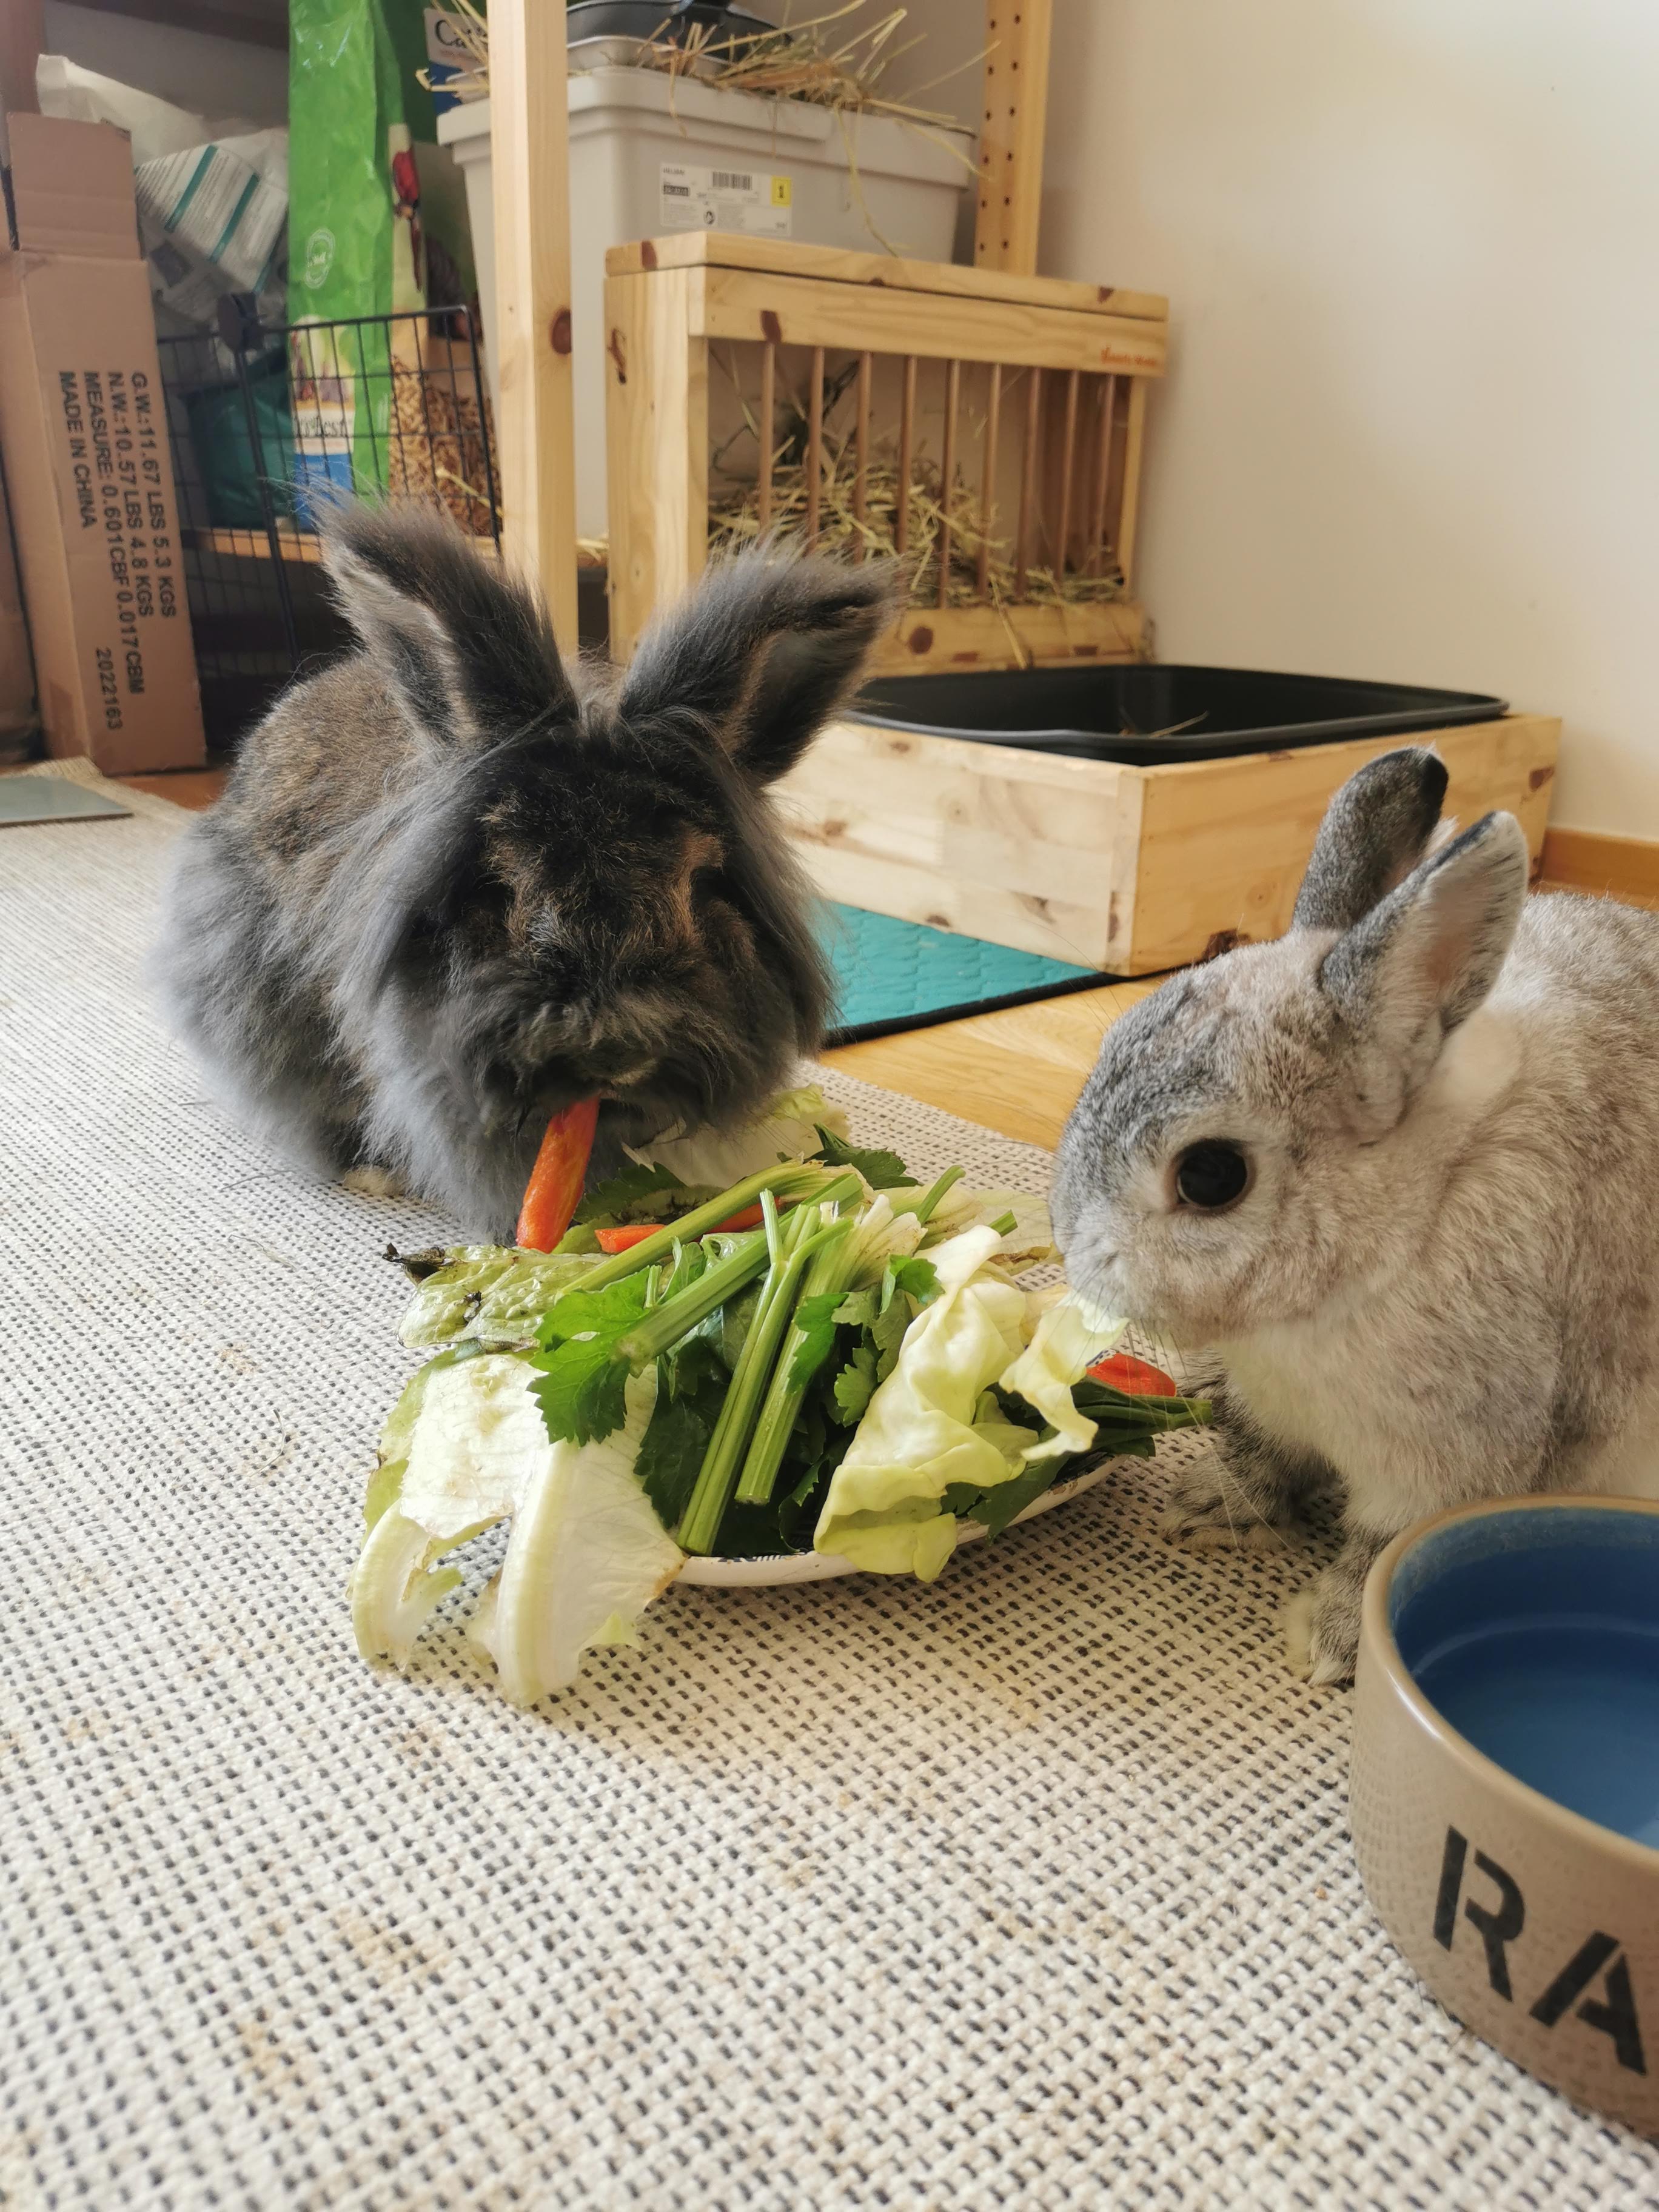 Bunnies eating vegetables